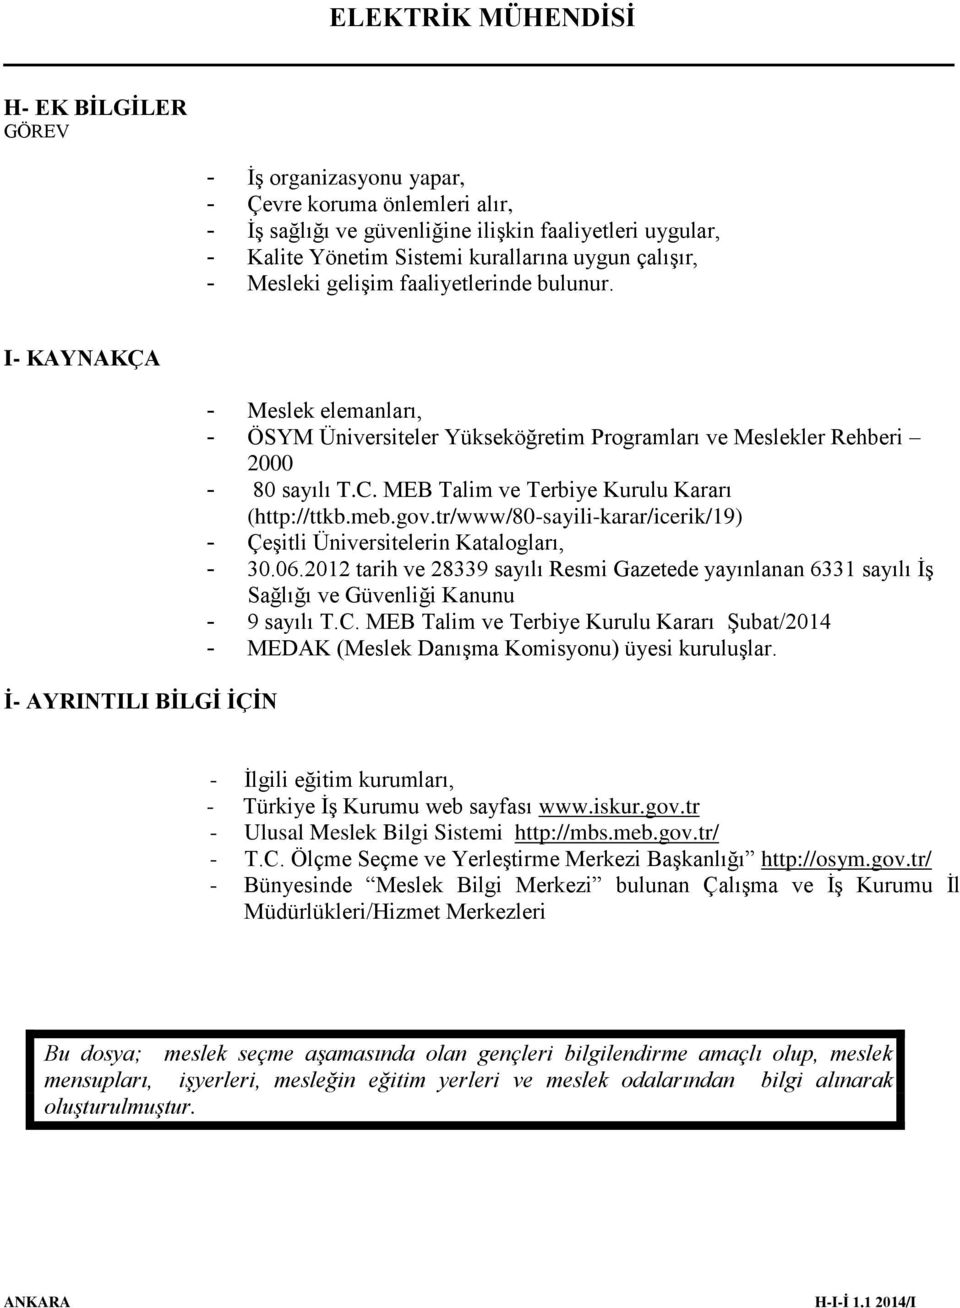 MEB Talim ve Terbiye Kurulu Kararı (http://ttkb.meb.gov.tr/www/80-sayili-karar/icerik/19) - Çeşitli Üniversitelerin Katalogları, - 30.06.